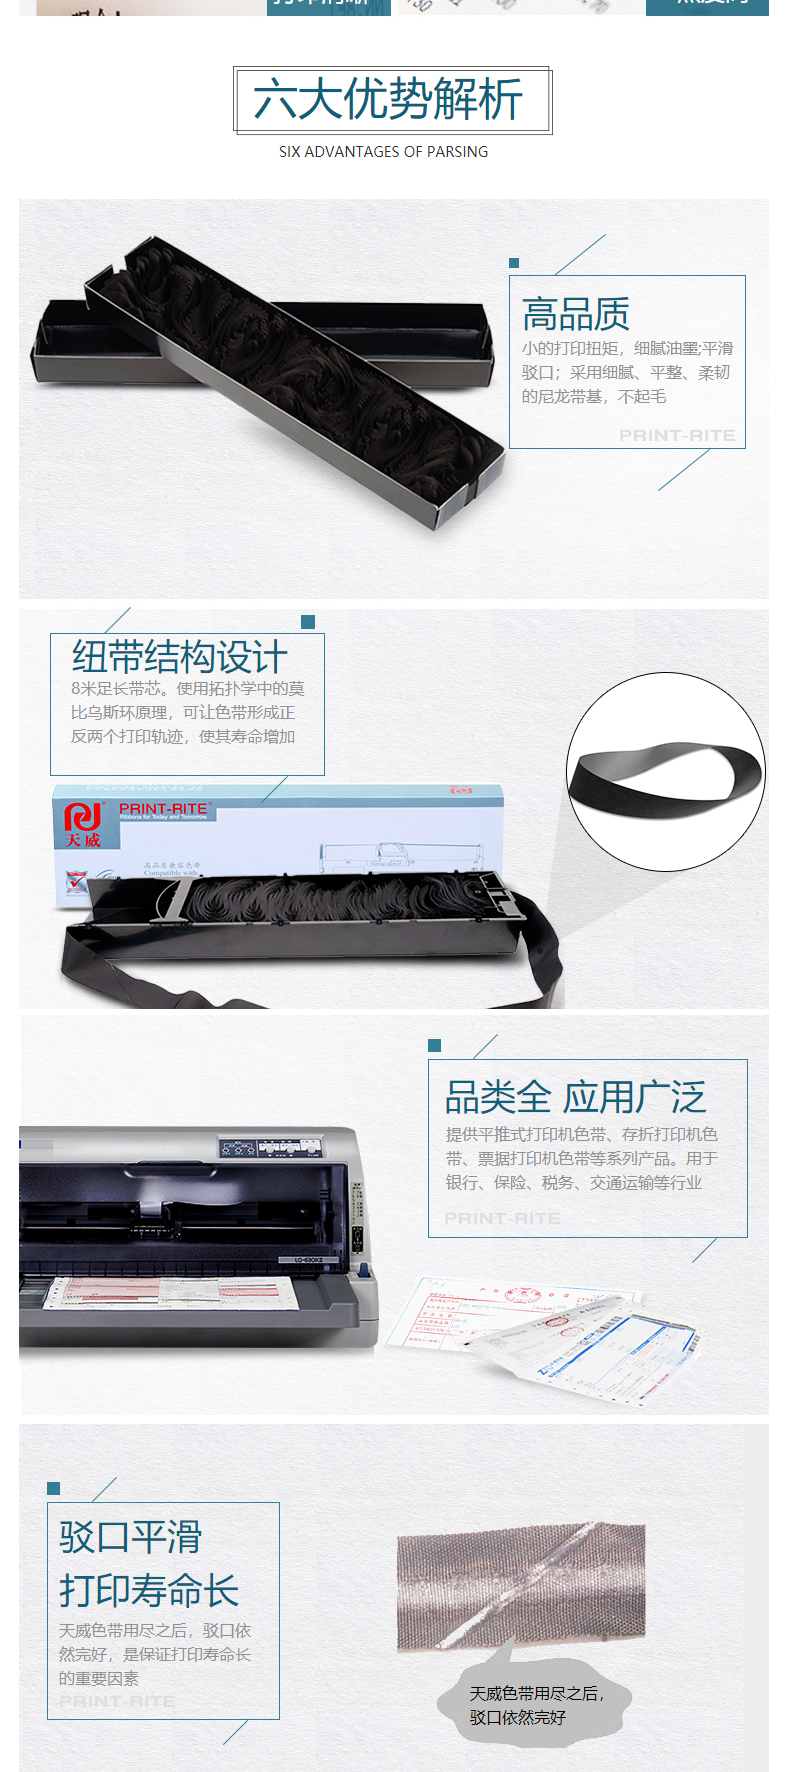 天威 PRINT-RITE 色带框/色带架 FP538K/530KIII RFJ415BPRJ 12m*12.7mm (黑色) (10盒起订)